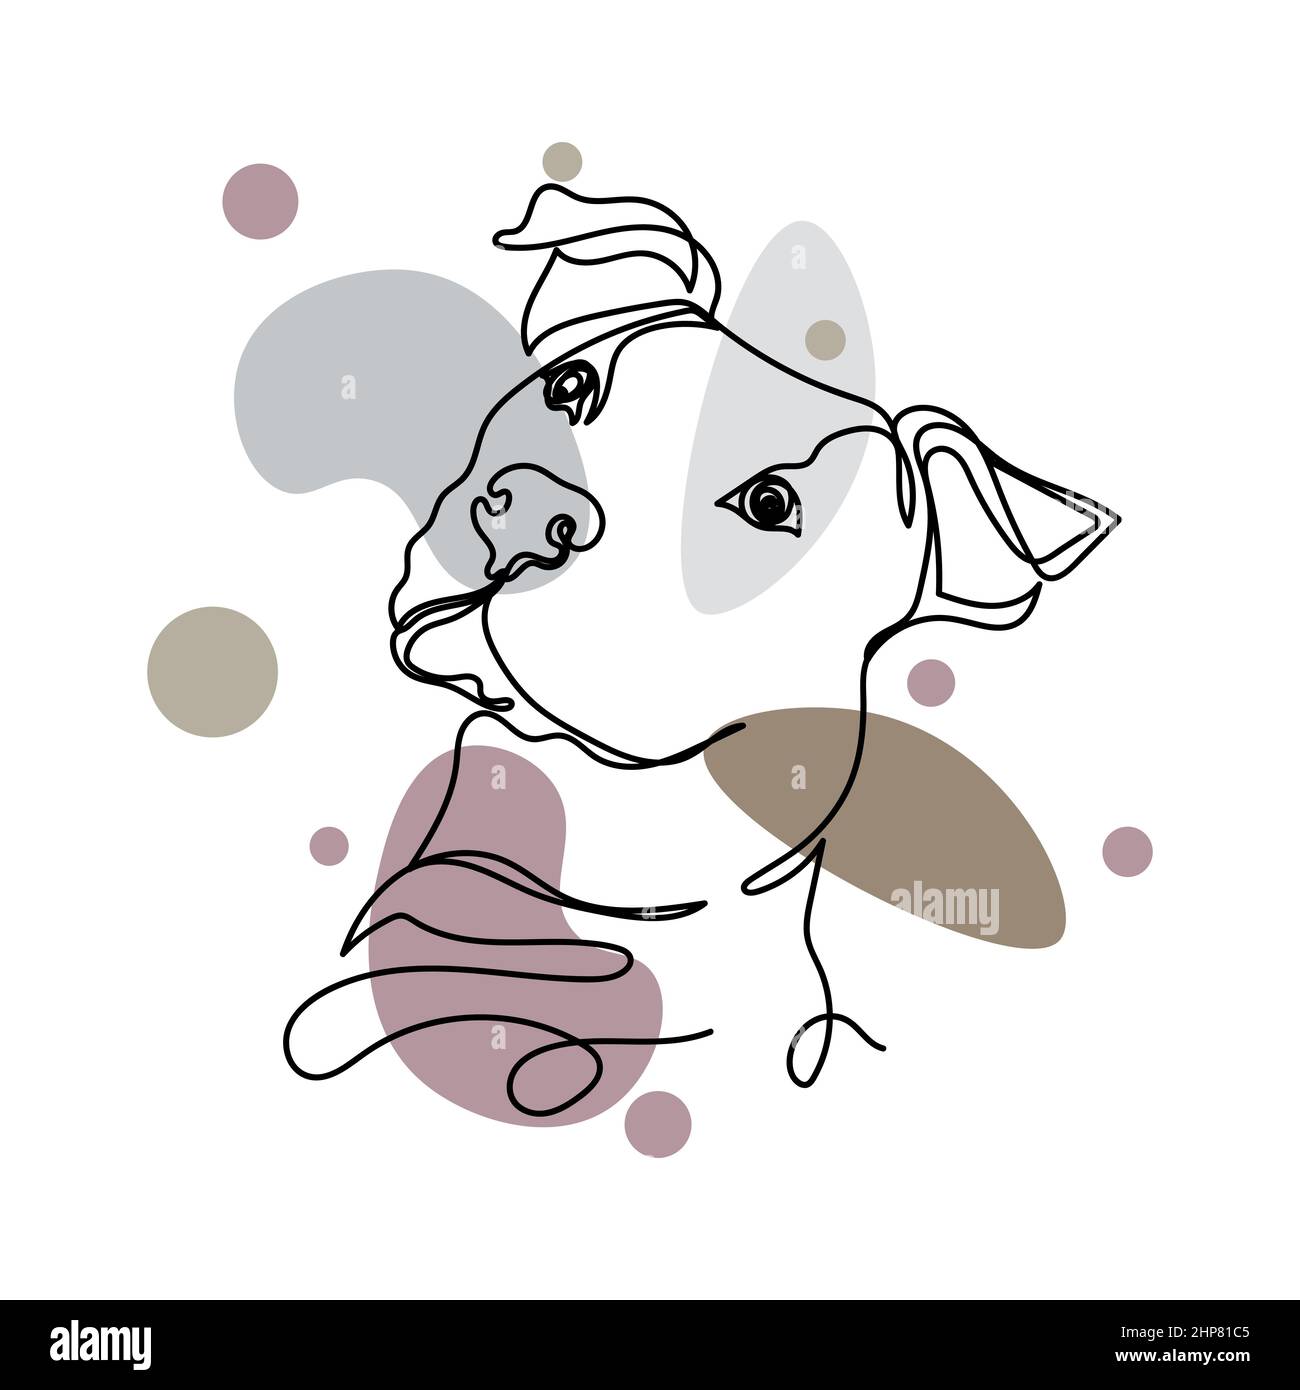 Vecteur abstrait continu une ligne simple dessin icône de mignon chien visage animal concept dans silhouette esquisse. Idéal pour les cartes de vœux Illustration de Vecteur